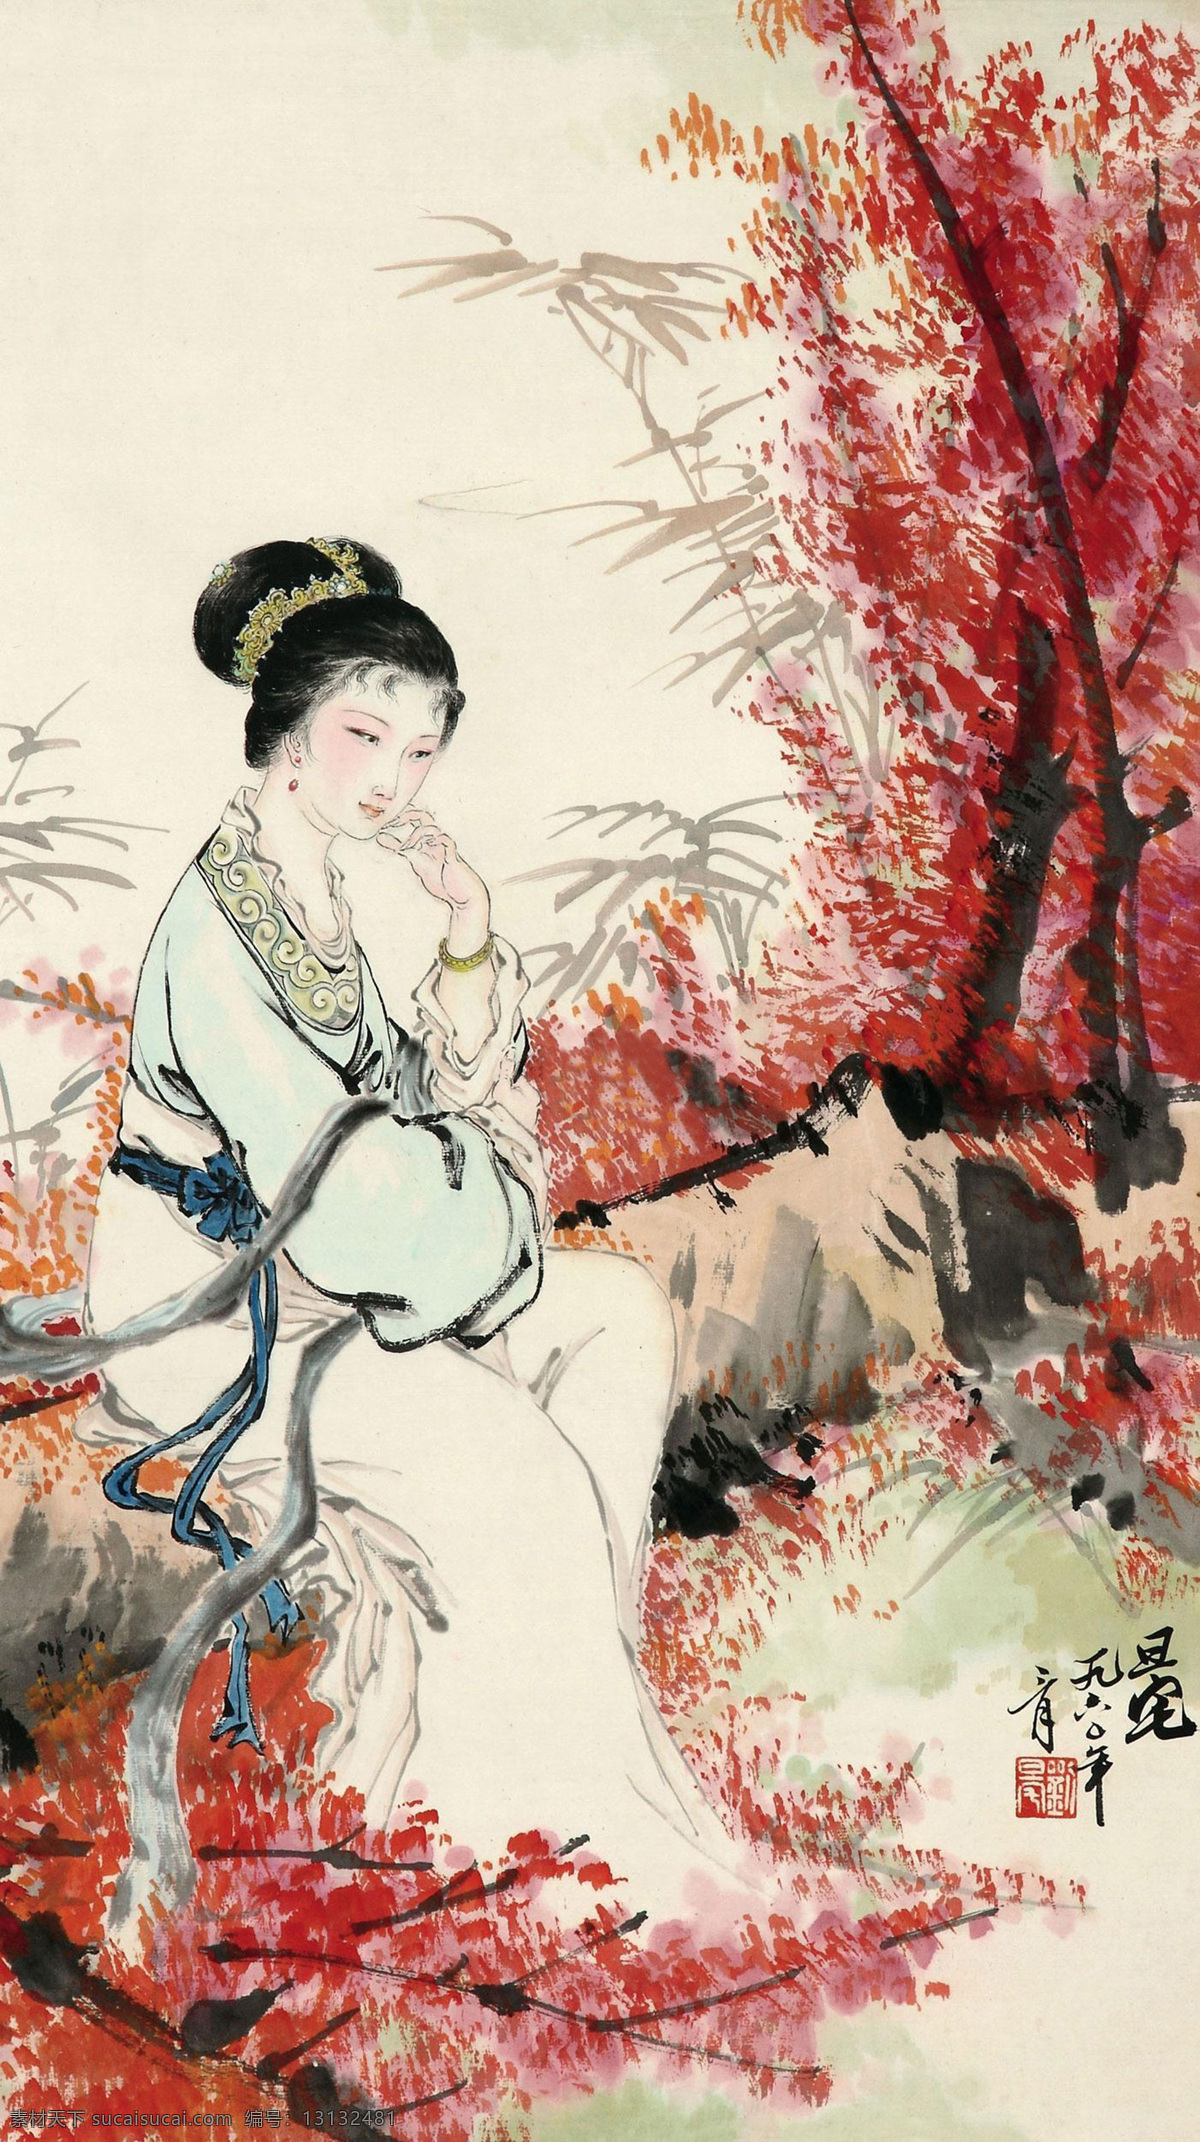 红 竹 仕女 熘袷伺杓扑夭 文化艺术